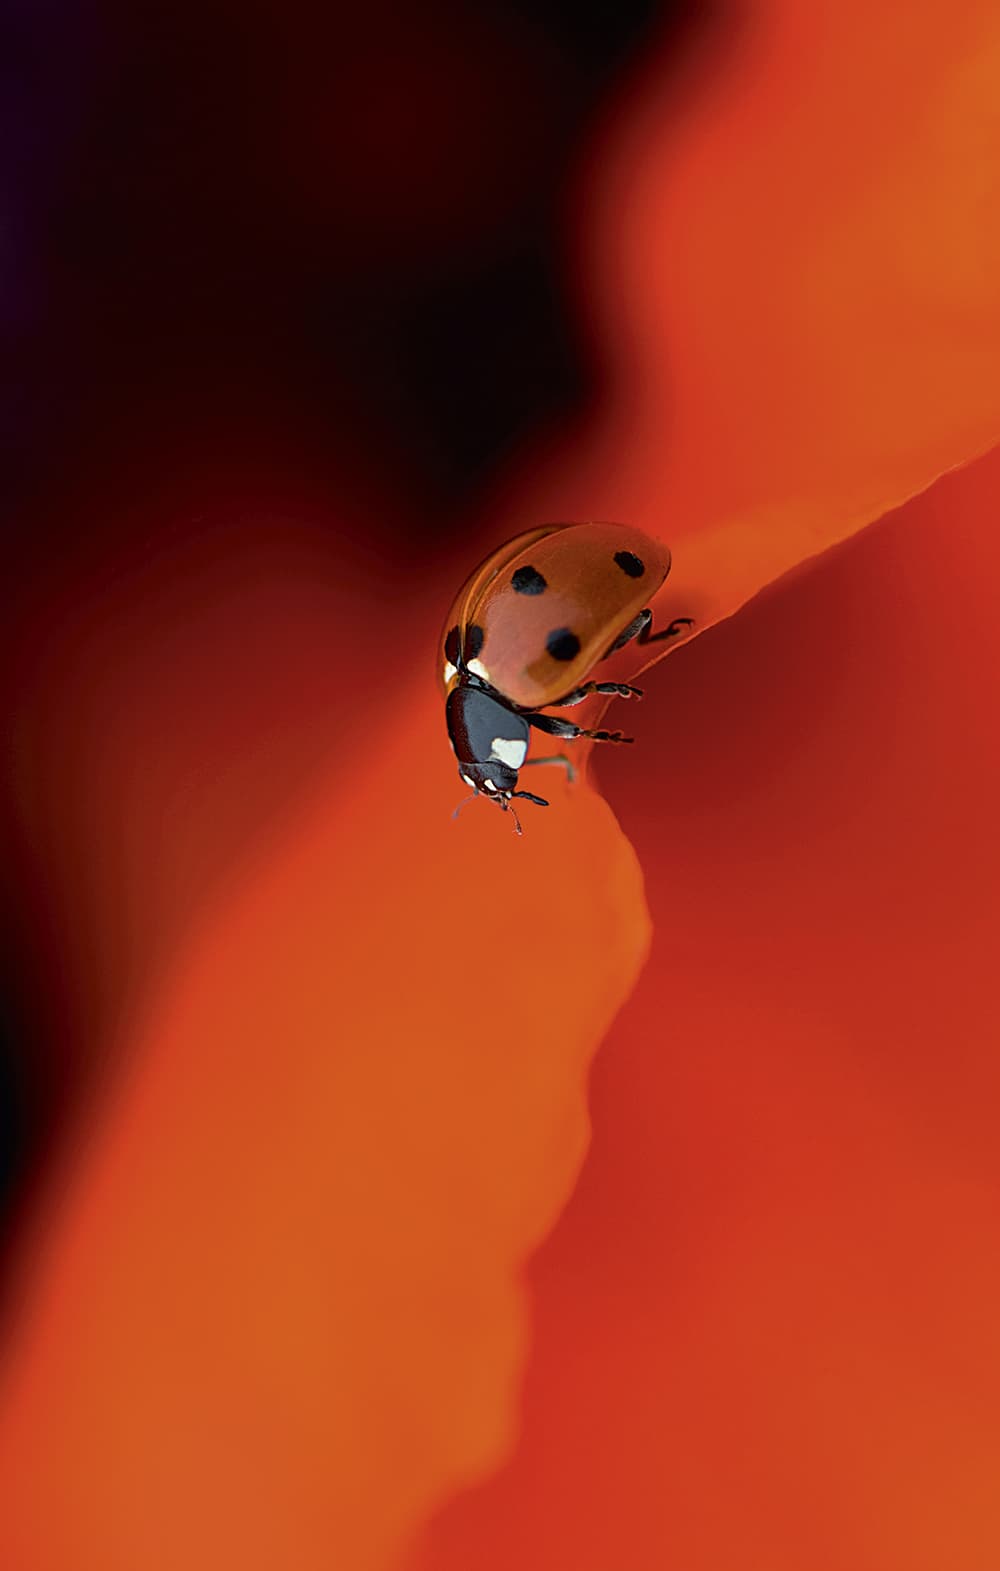 Ladybird by Jacky Parker